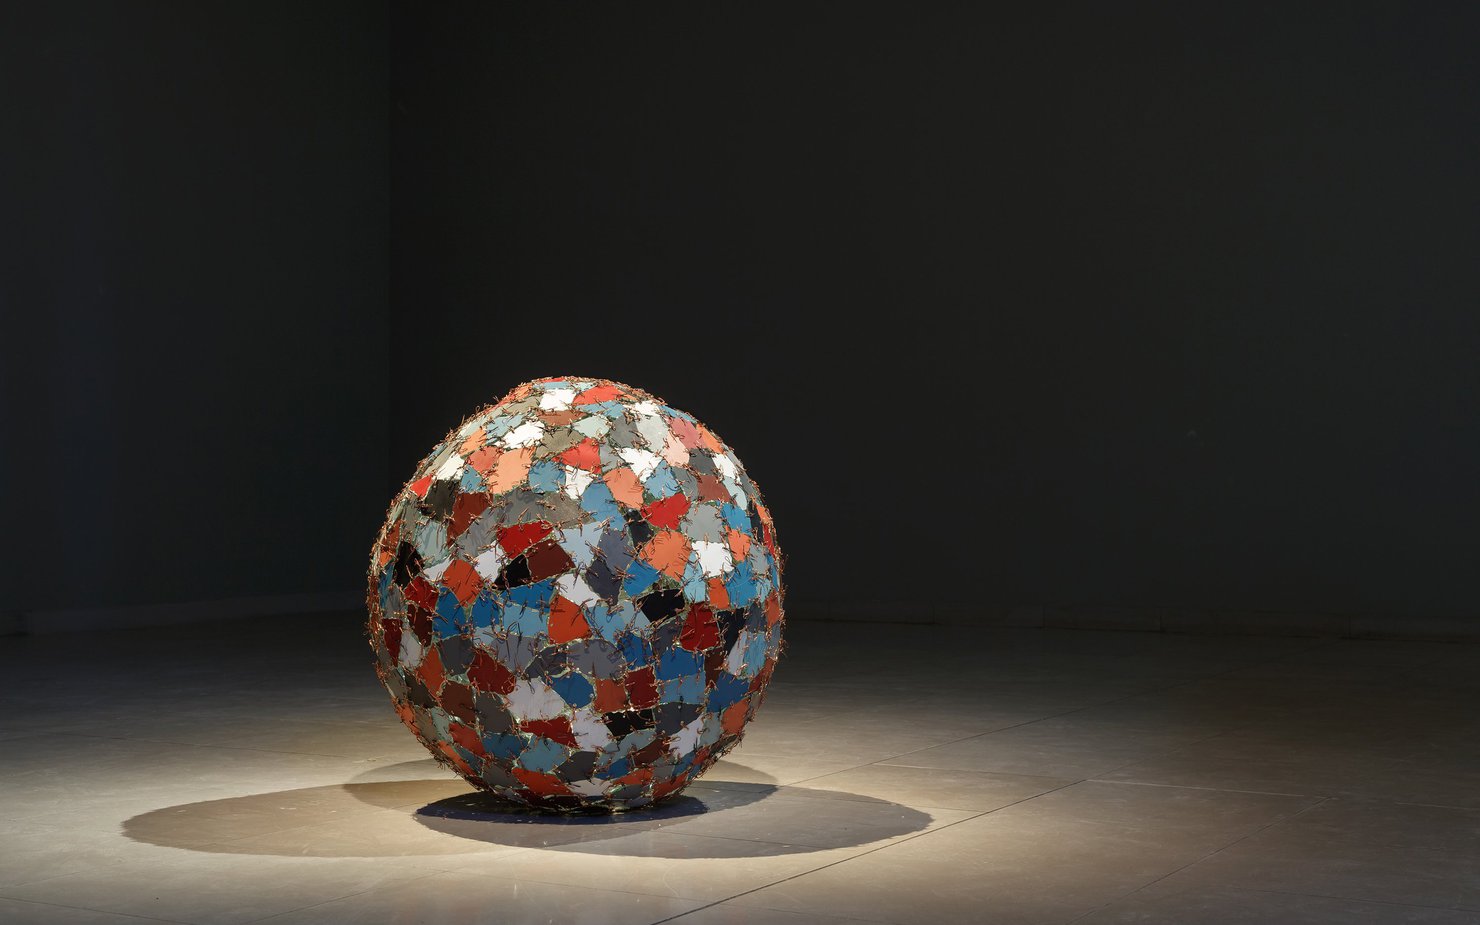 صورة تسلّط الضوء على العمل الفني فوضى+إصلاح=كون، وتظهر منحوتة عبارة عن أجزاء مرايا ملونة مثبتة على شكل كرة بأسلاك معدنية